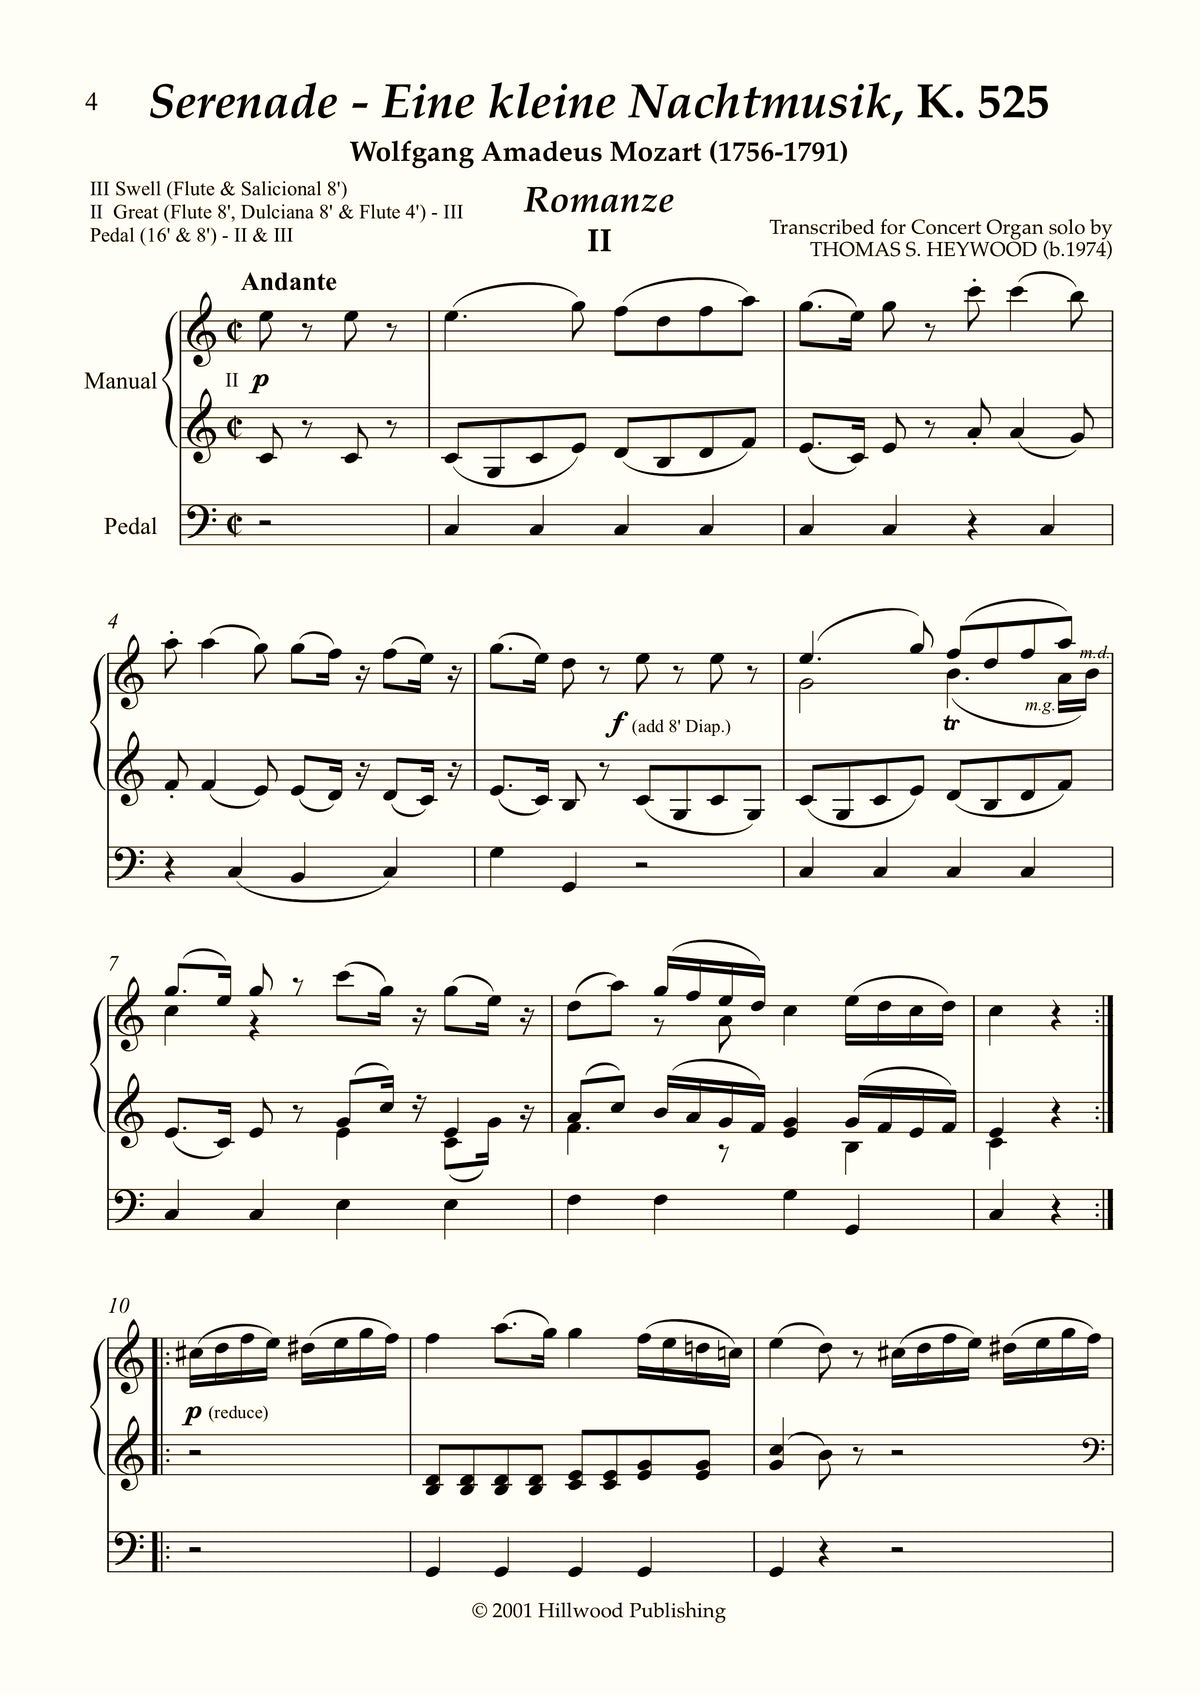 Mozart/Heywood - Romanze from Eine kleine Nachtmusik, K. 525 (Score) | Thomas Heywood | Concert Organ International